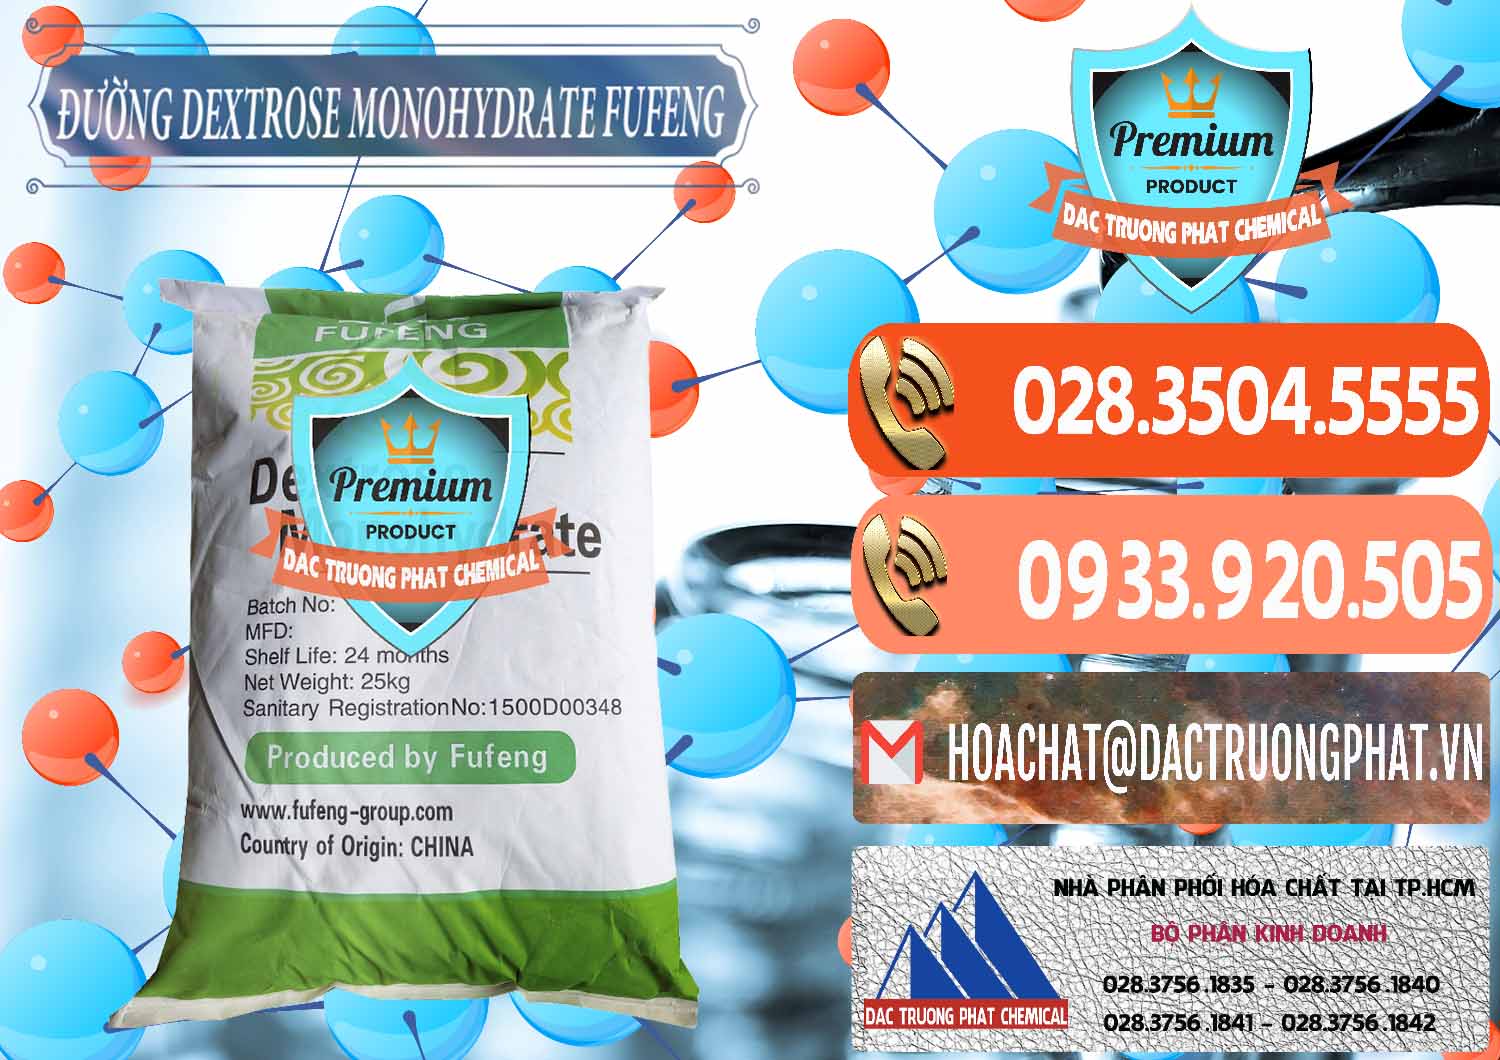 Chuyên cung cấp ( bán ) Đường Dextrose Monohydrate Food Grade Fufeng Trung Quốc China - 0223 - Công ty bán và phân phối hóa chất tại TP.HCM - hoachatmientay.com